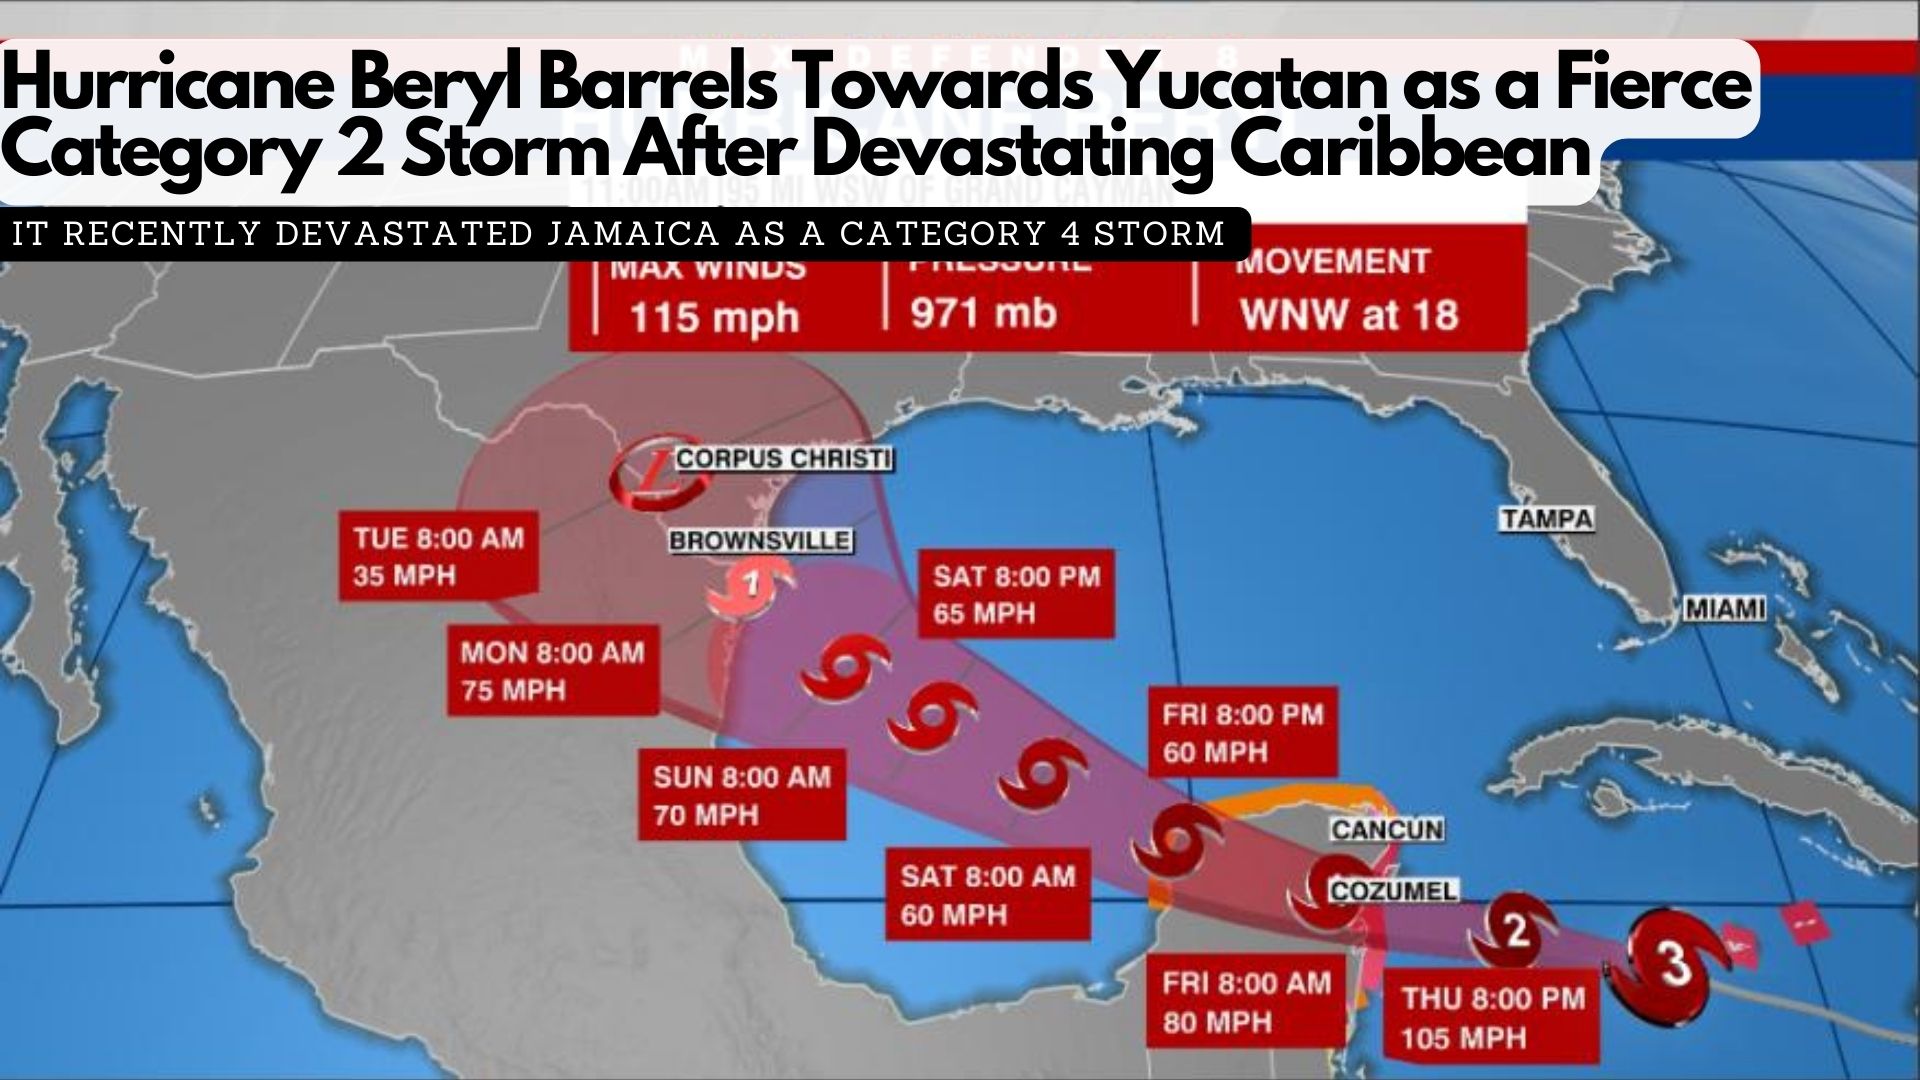 Hurricane Beryl Barrels Towards Yucatan as a Fierce Category 2 Storm After Devastating Caribbean